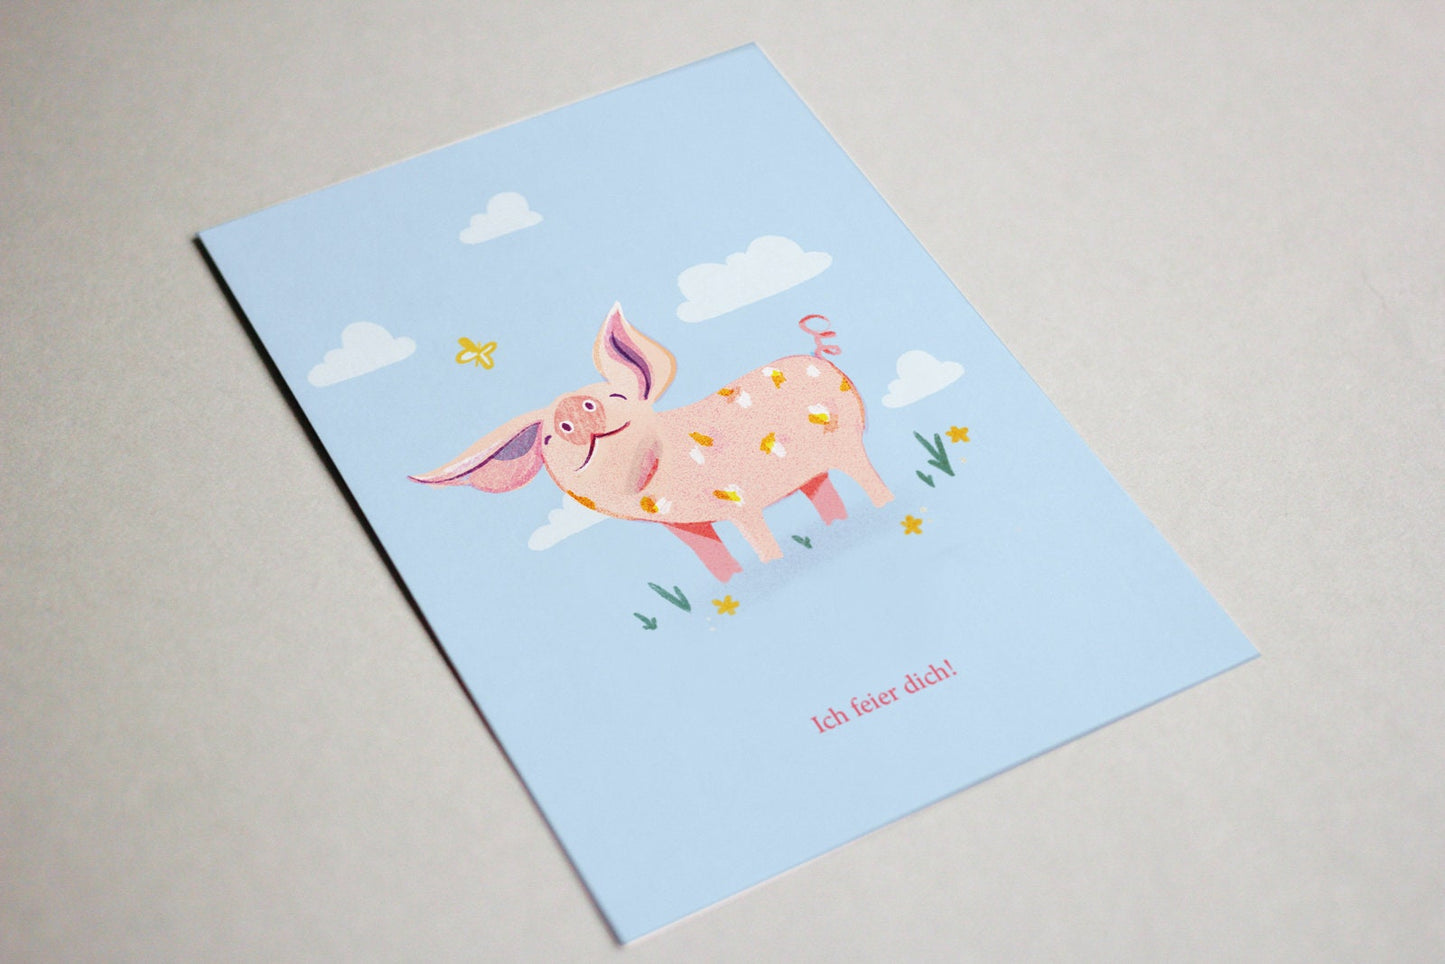 Postkarte Schwein "Ich feier dich!"